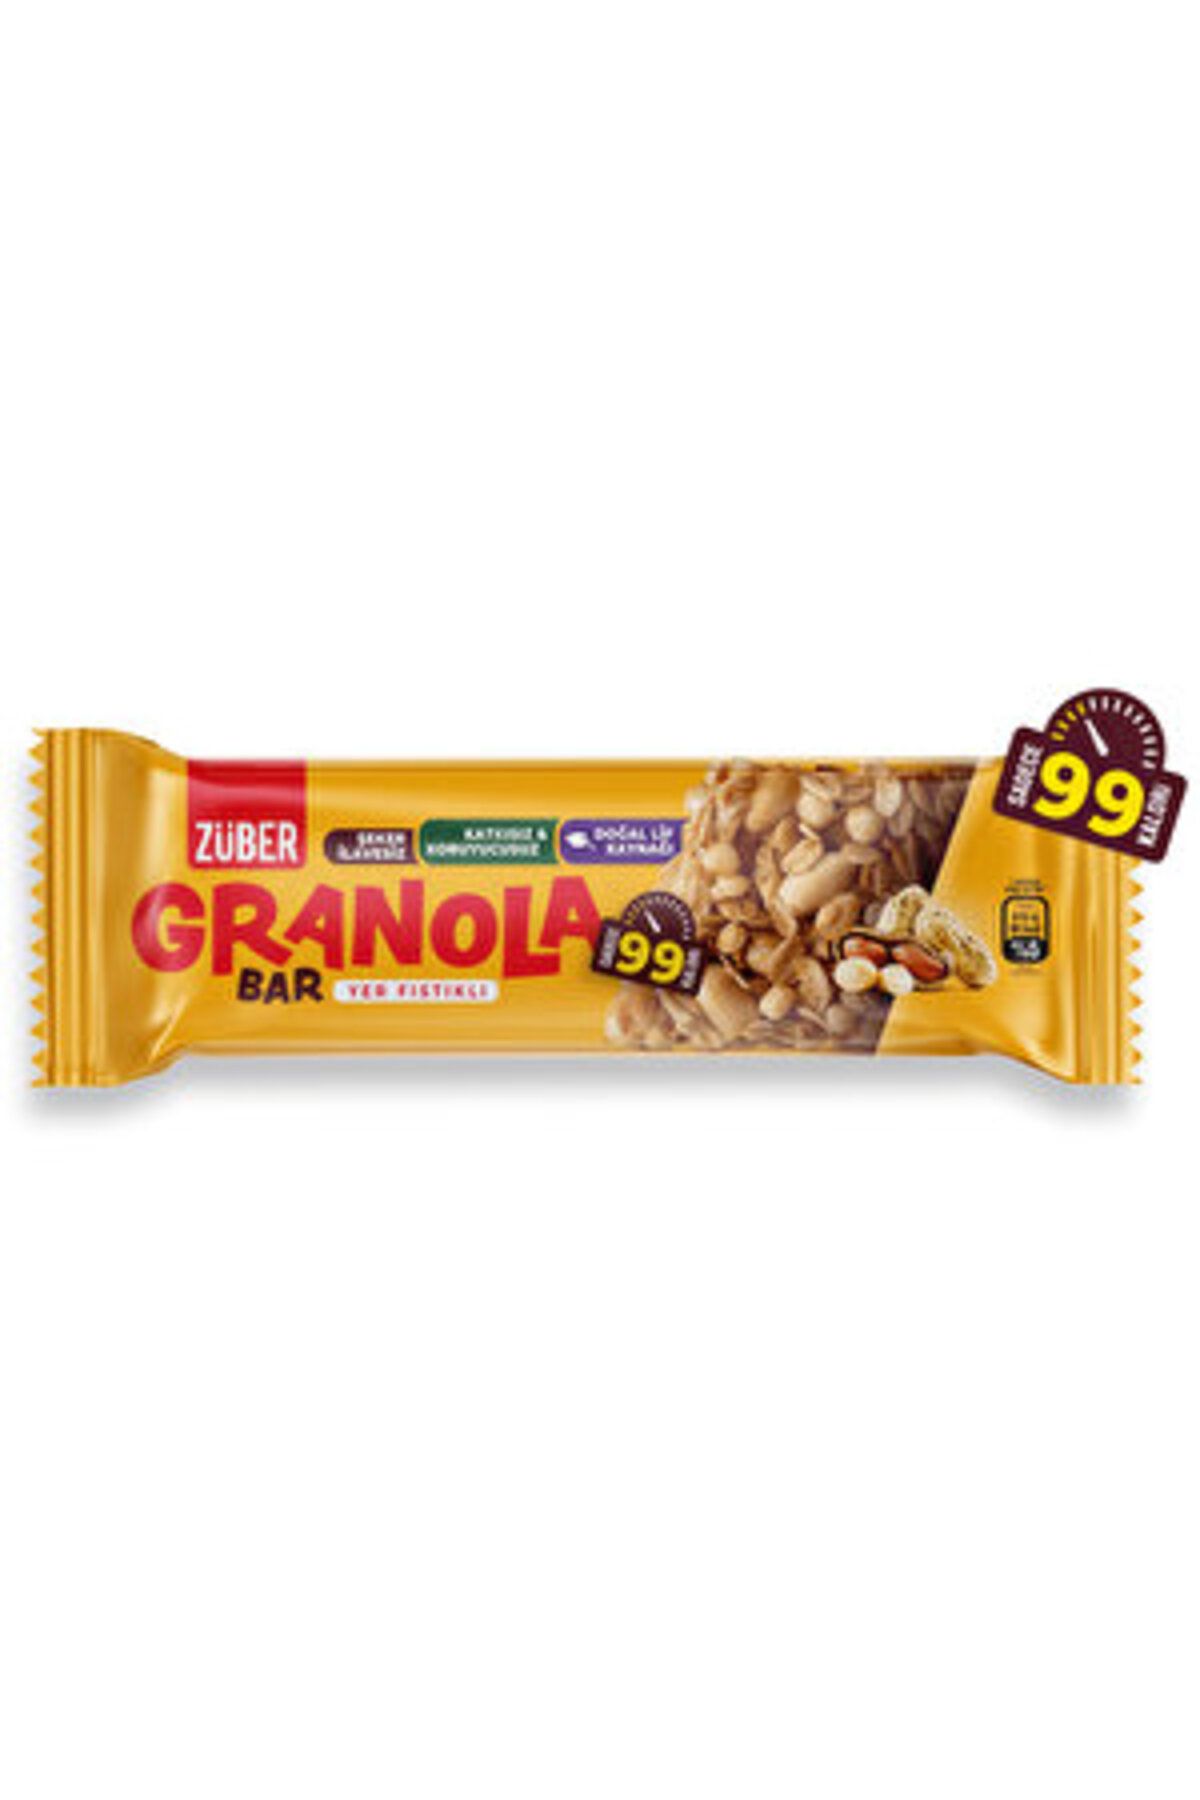 Züber Yer Fıstıklı Granola Bar 25 gr ( 1 ADET )